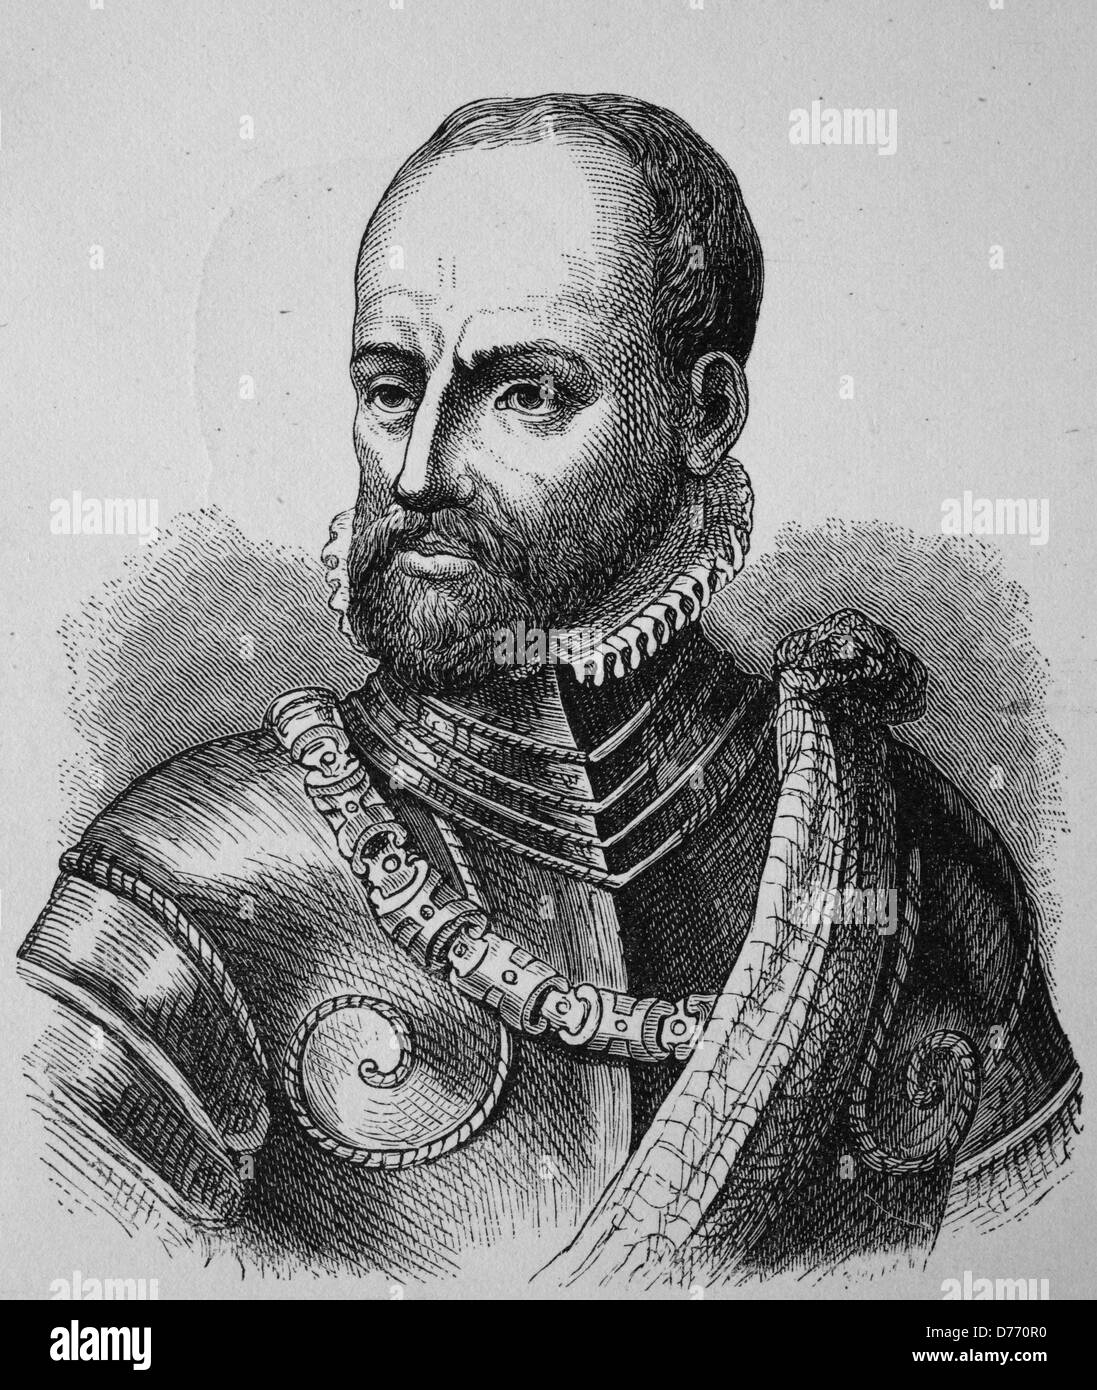 Philippe de Montmorency, Graf von Horn, 1518-1568, niederländische Admiral, Freiheitskämpfer, Ritter des Ordens vom Goldenen Vlies, h Stockfoto